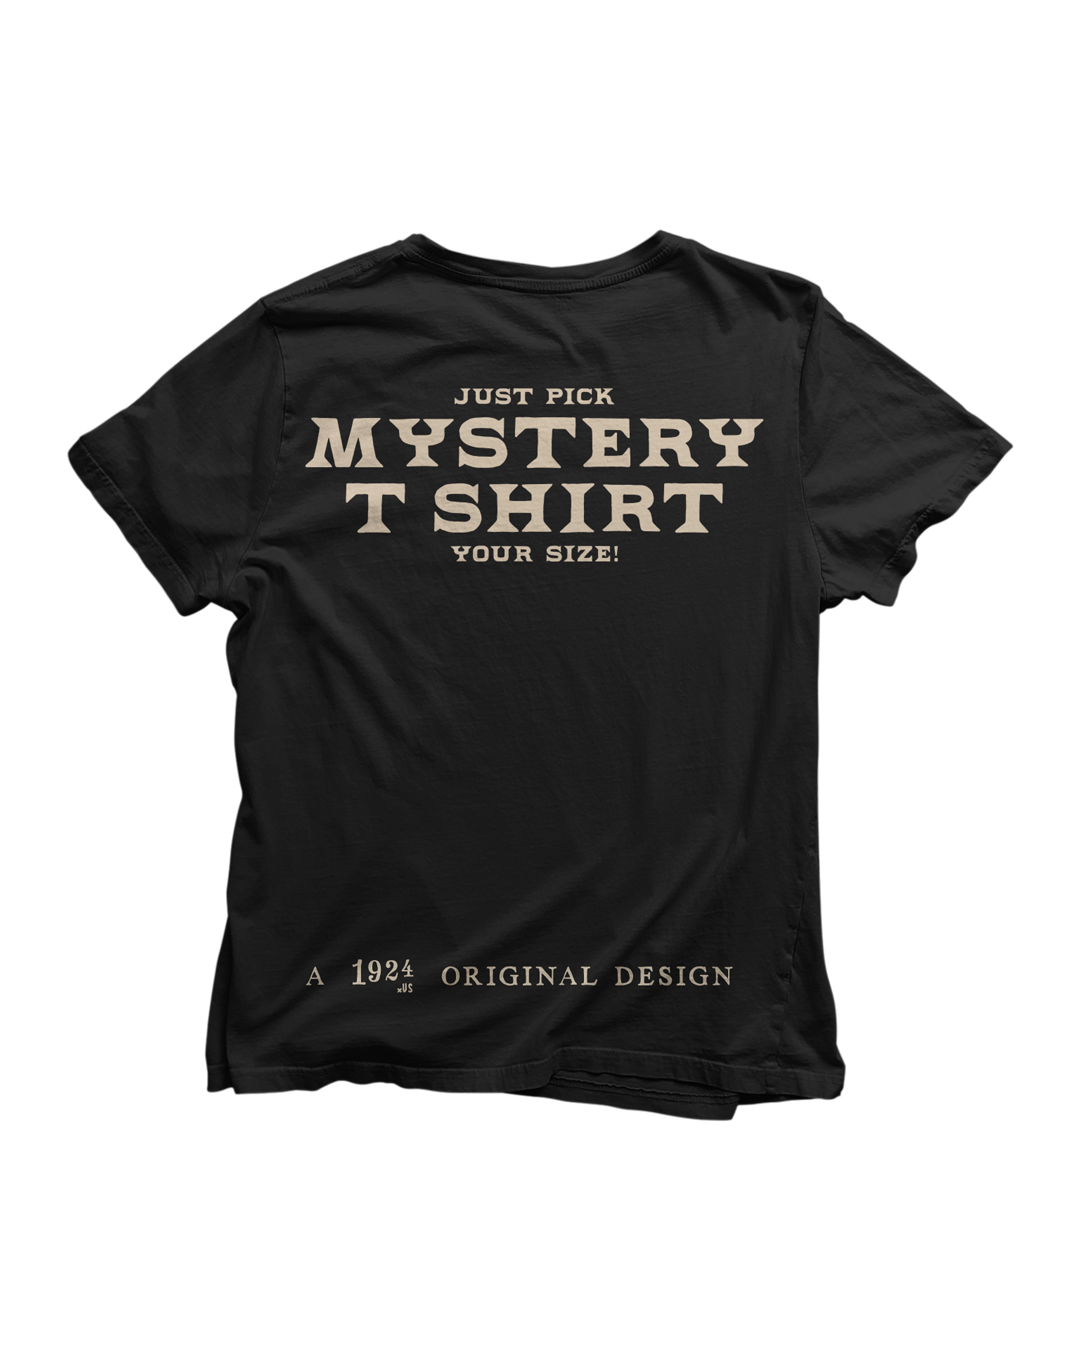 ¡Camiseta misteriosa!